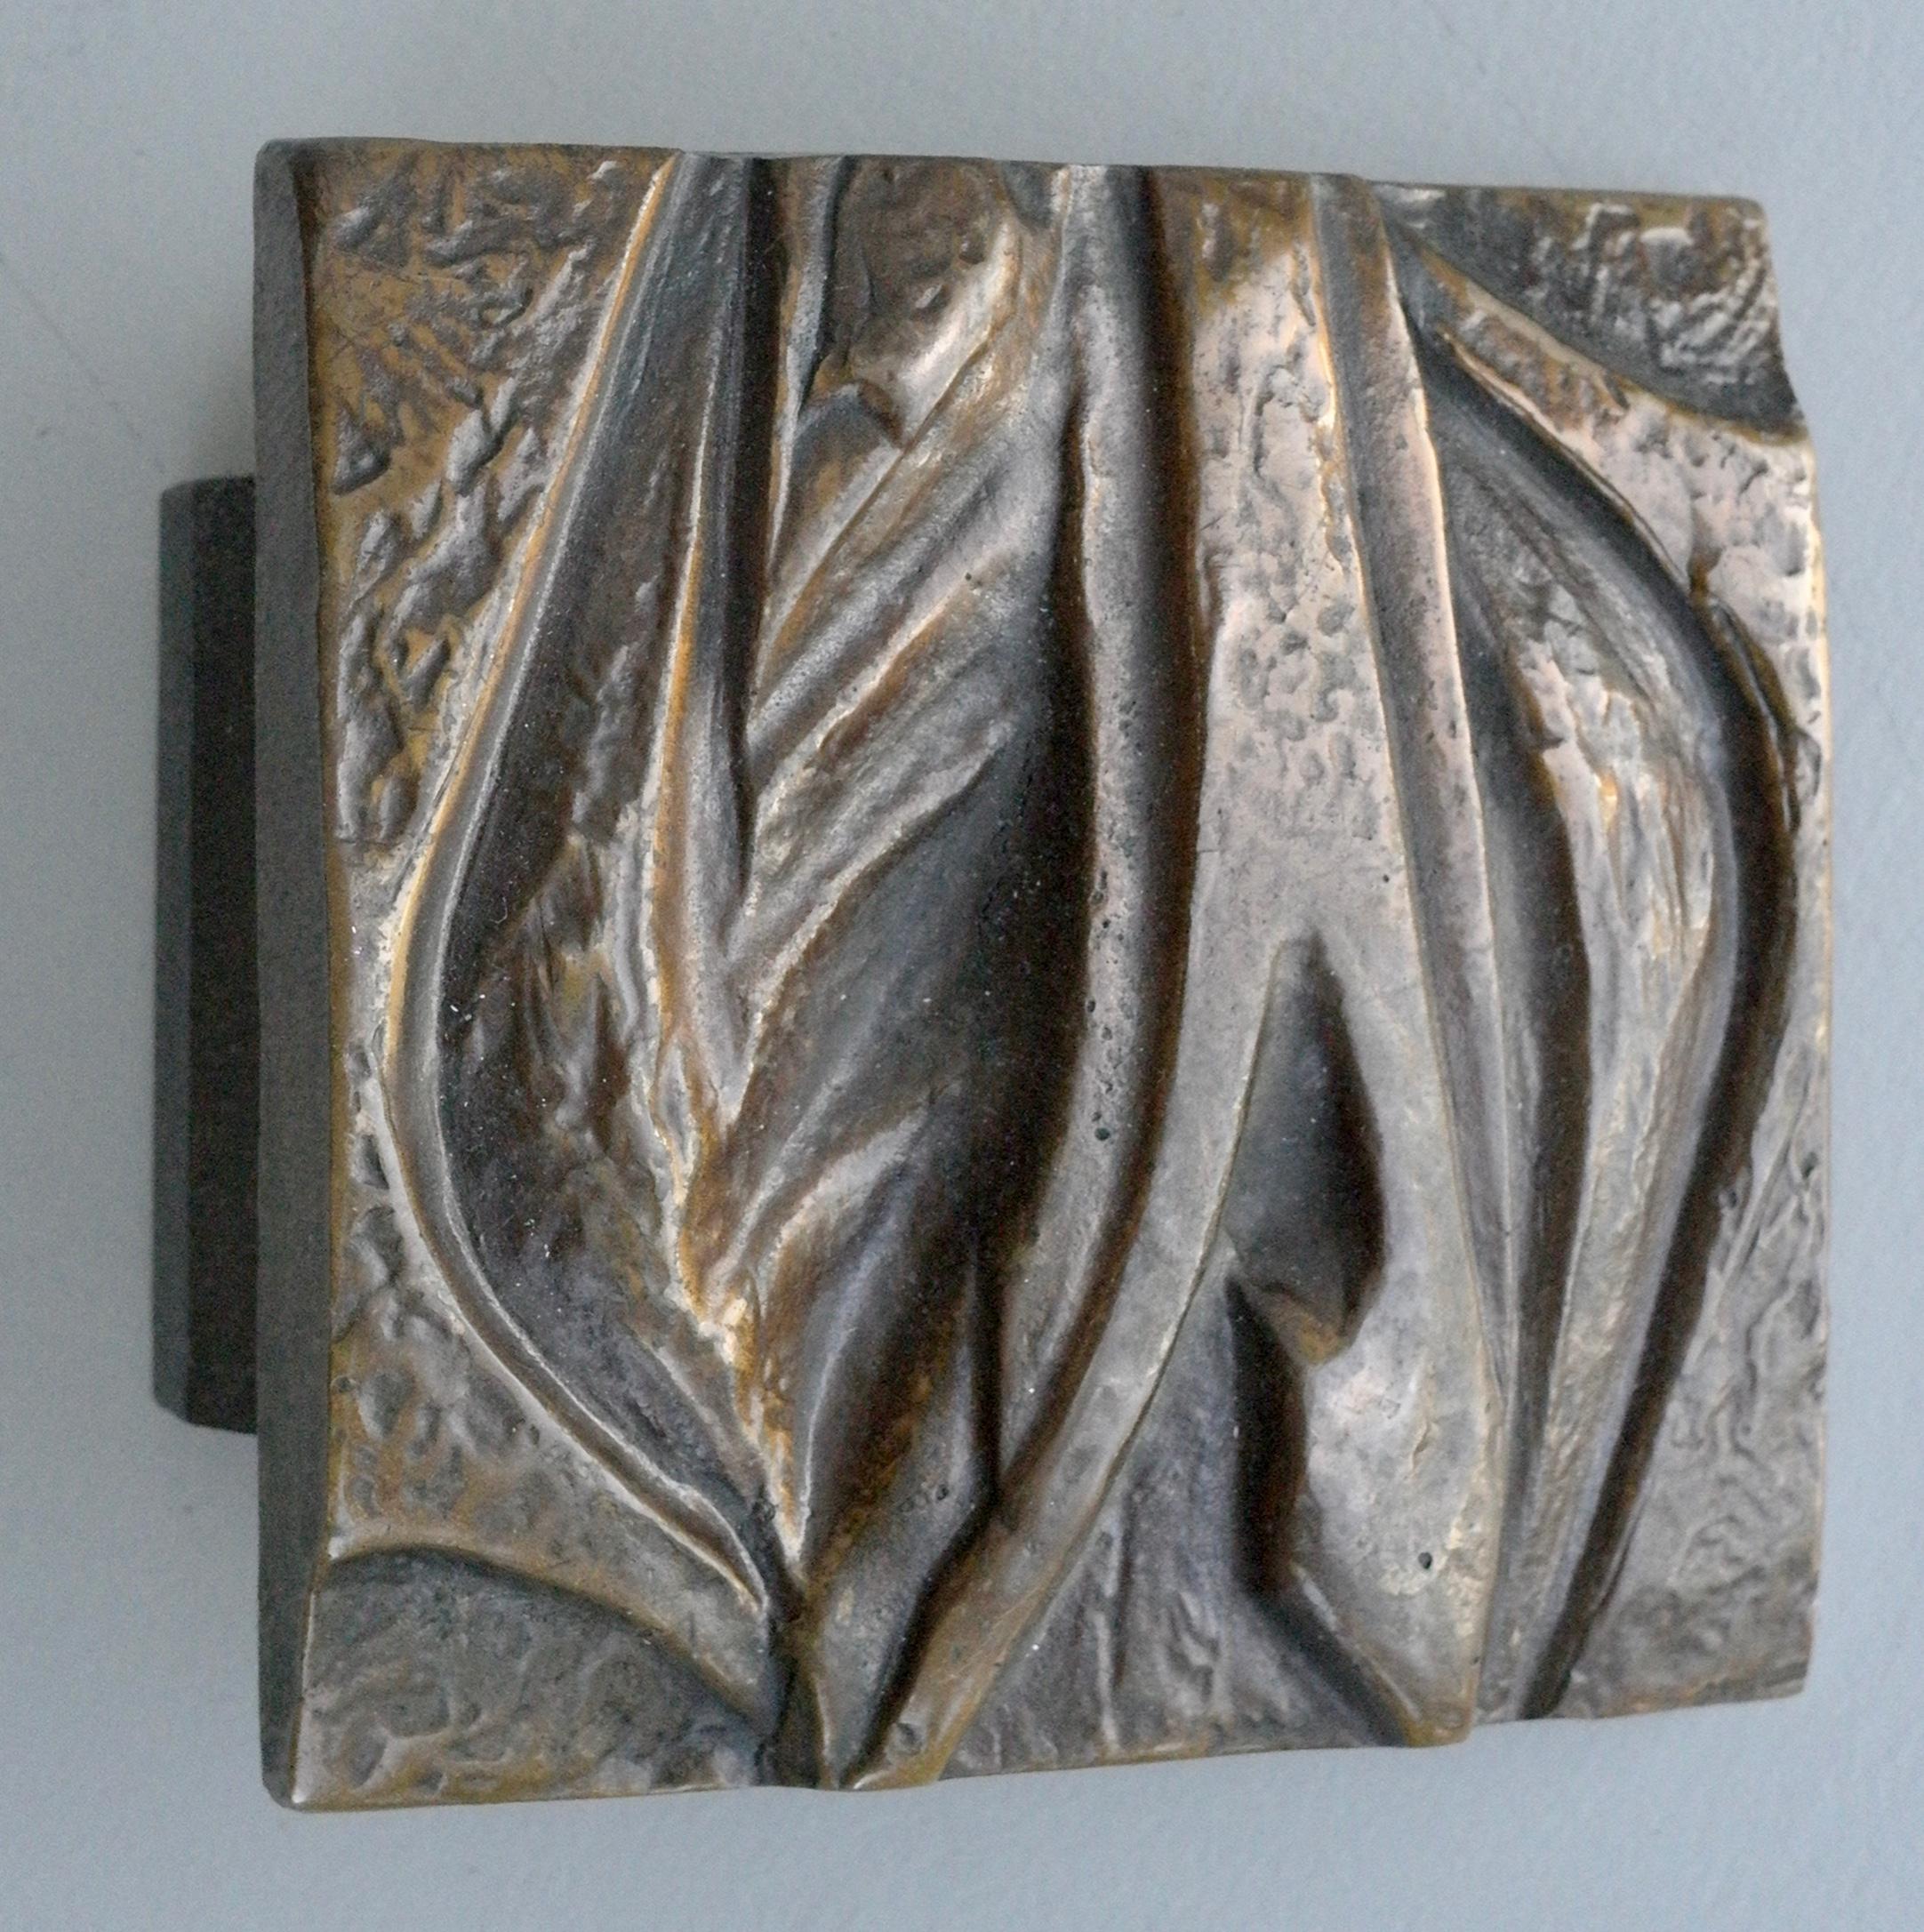 Sculptural organic midcentury front door art handle in bronze.